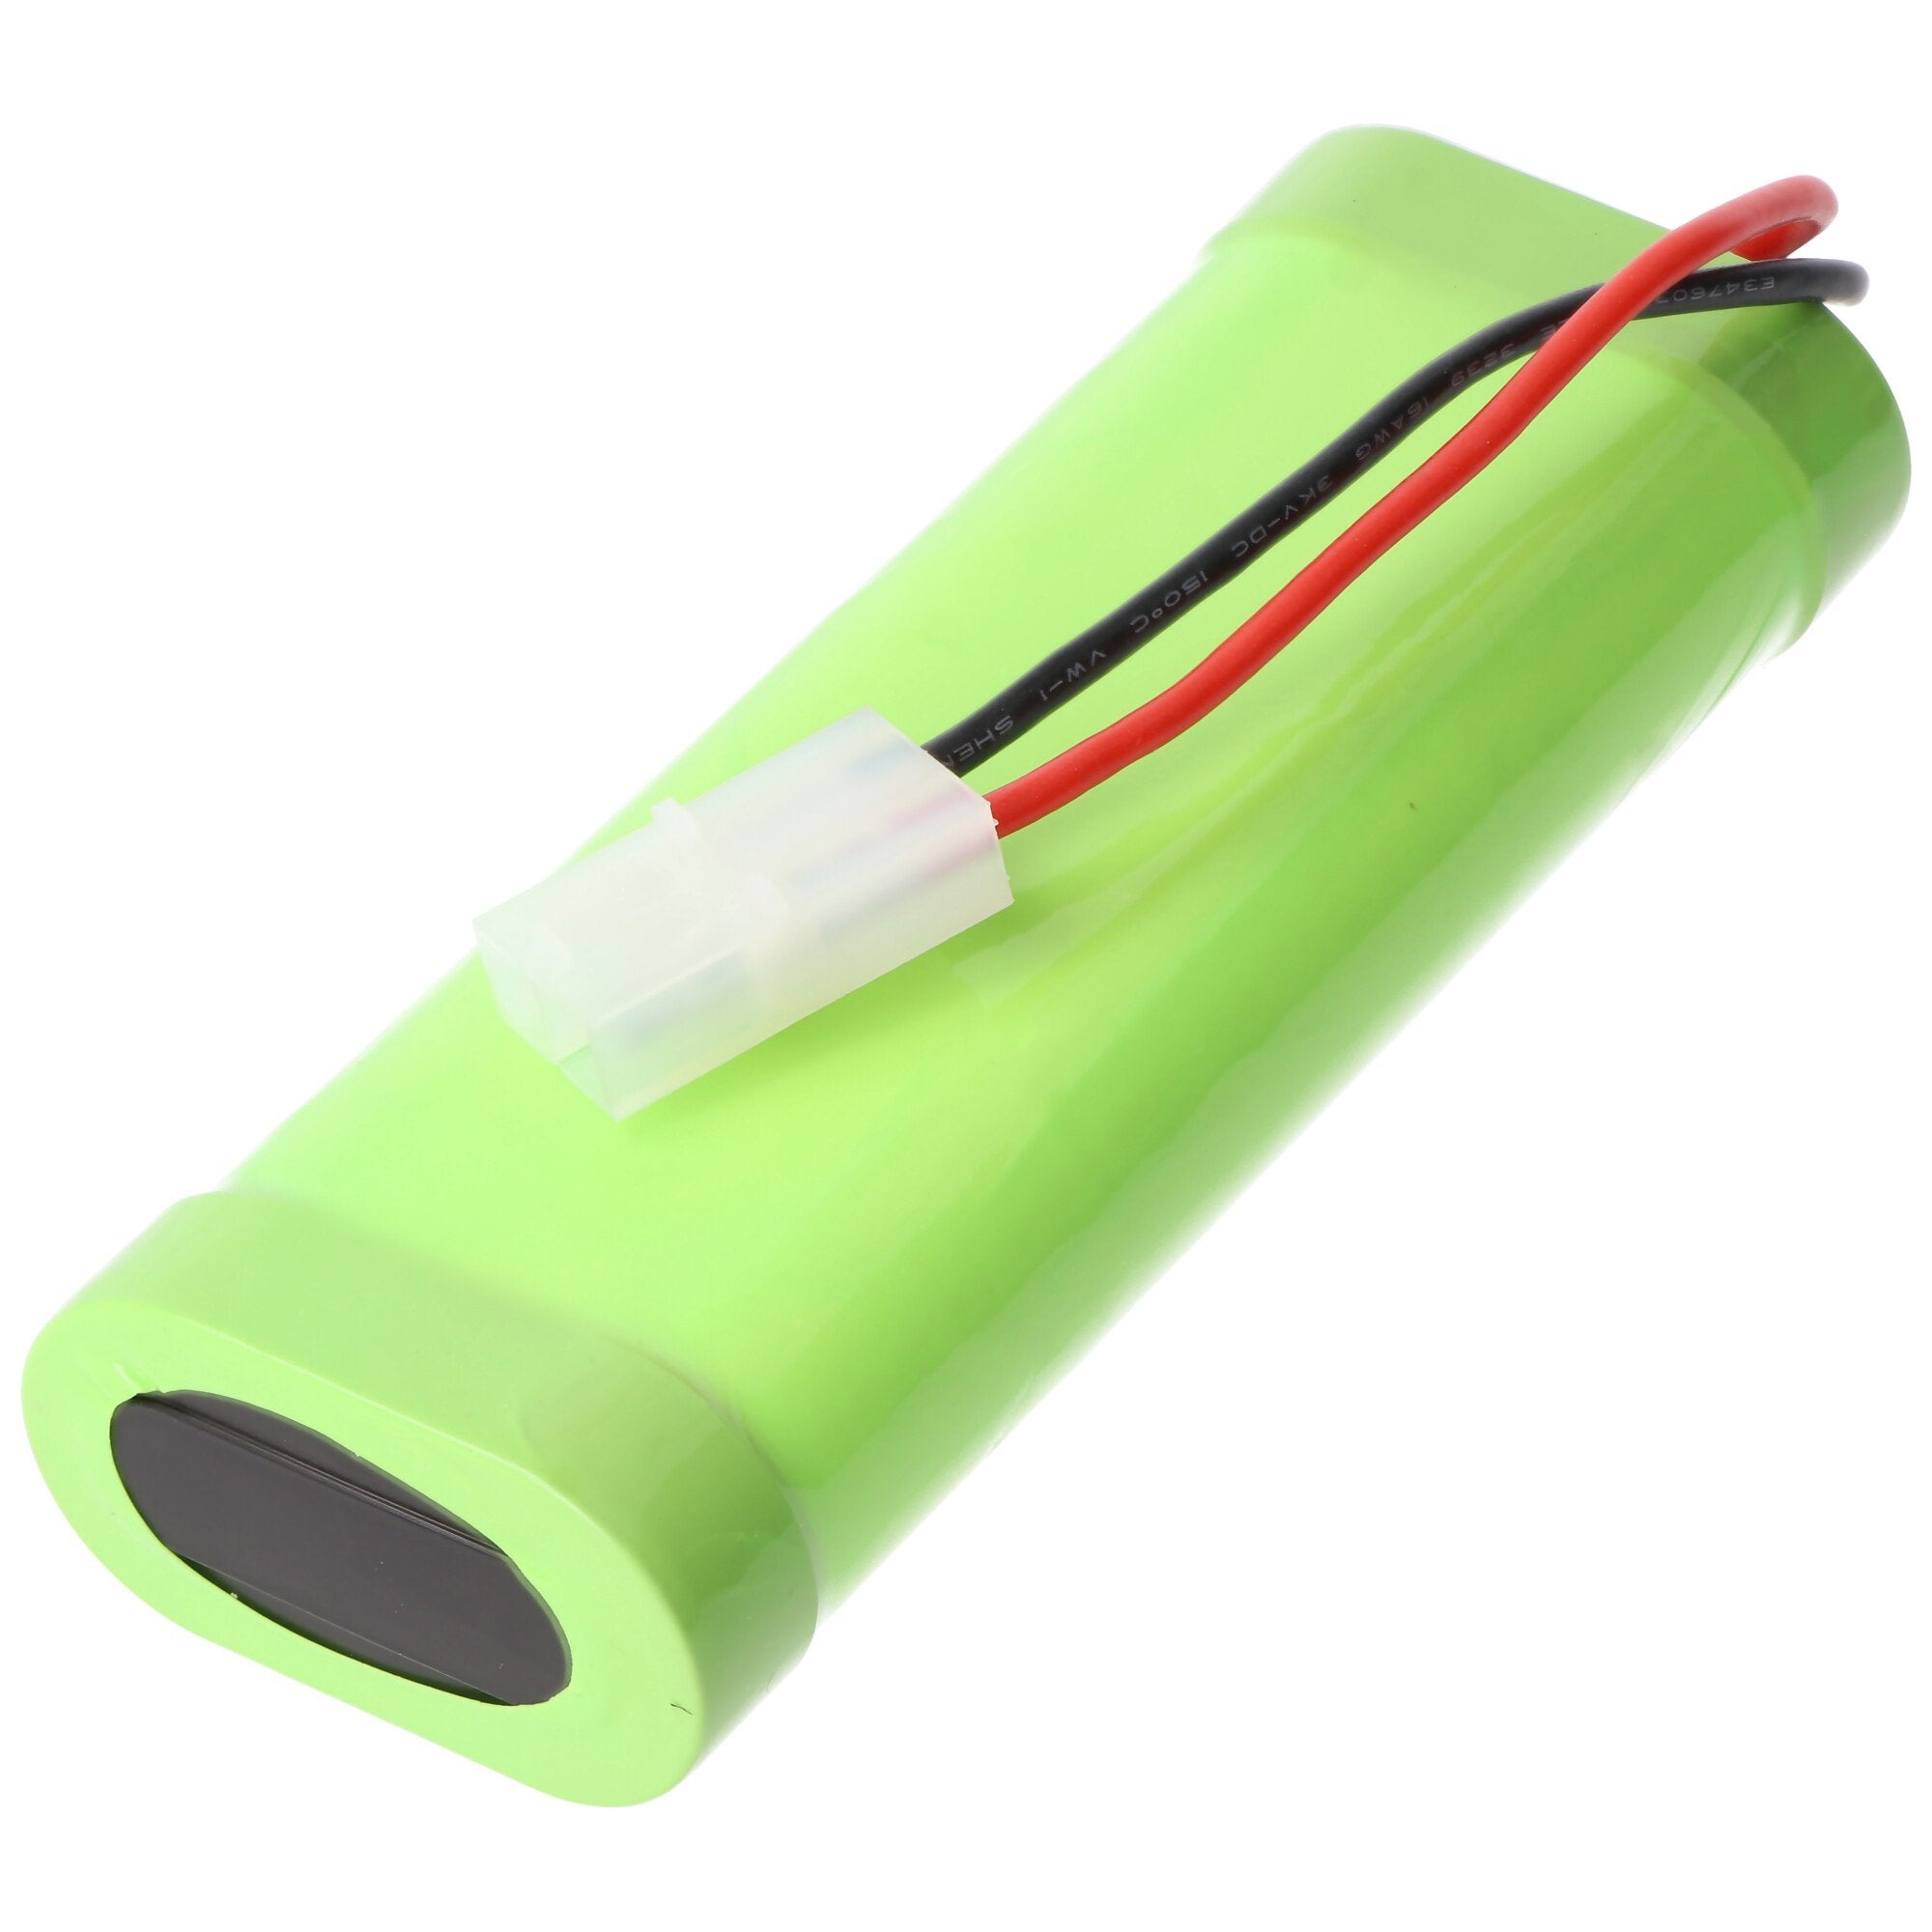 NiMH battery - 5000mAh (7.2V) - for model making